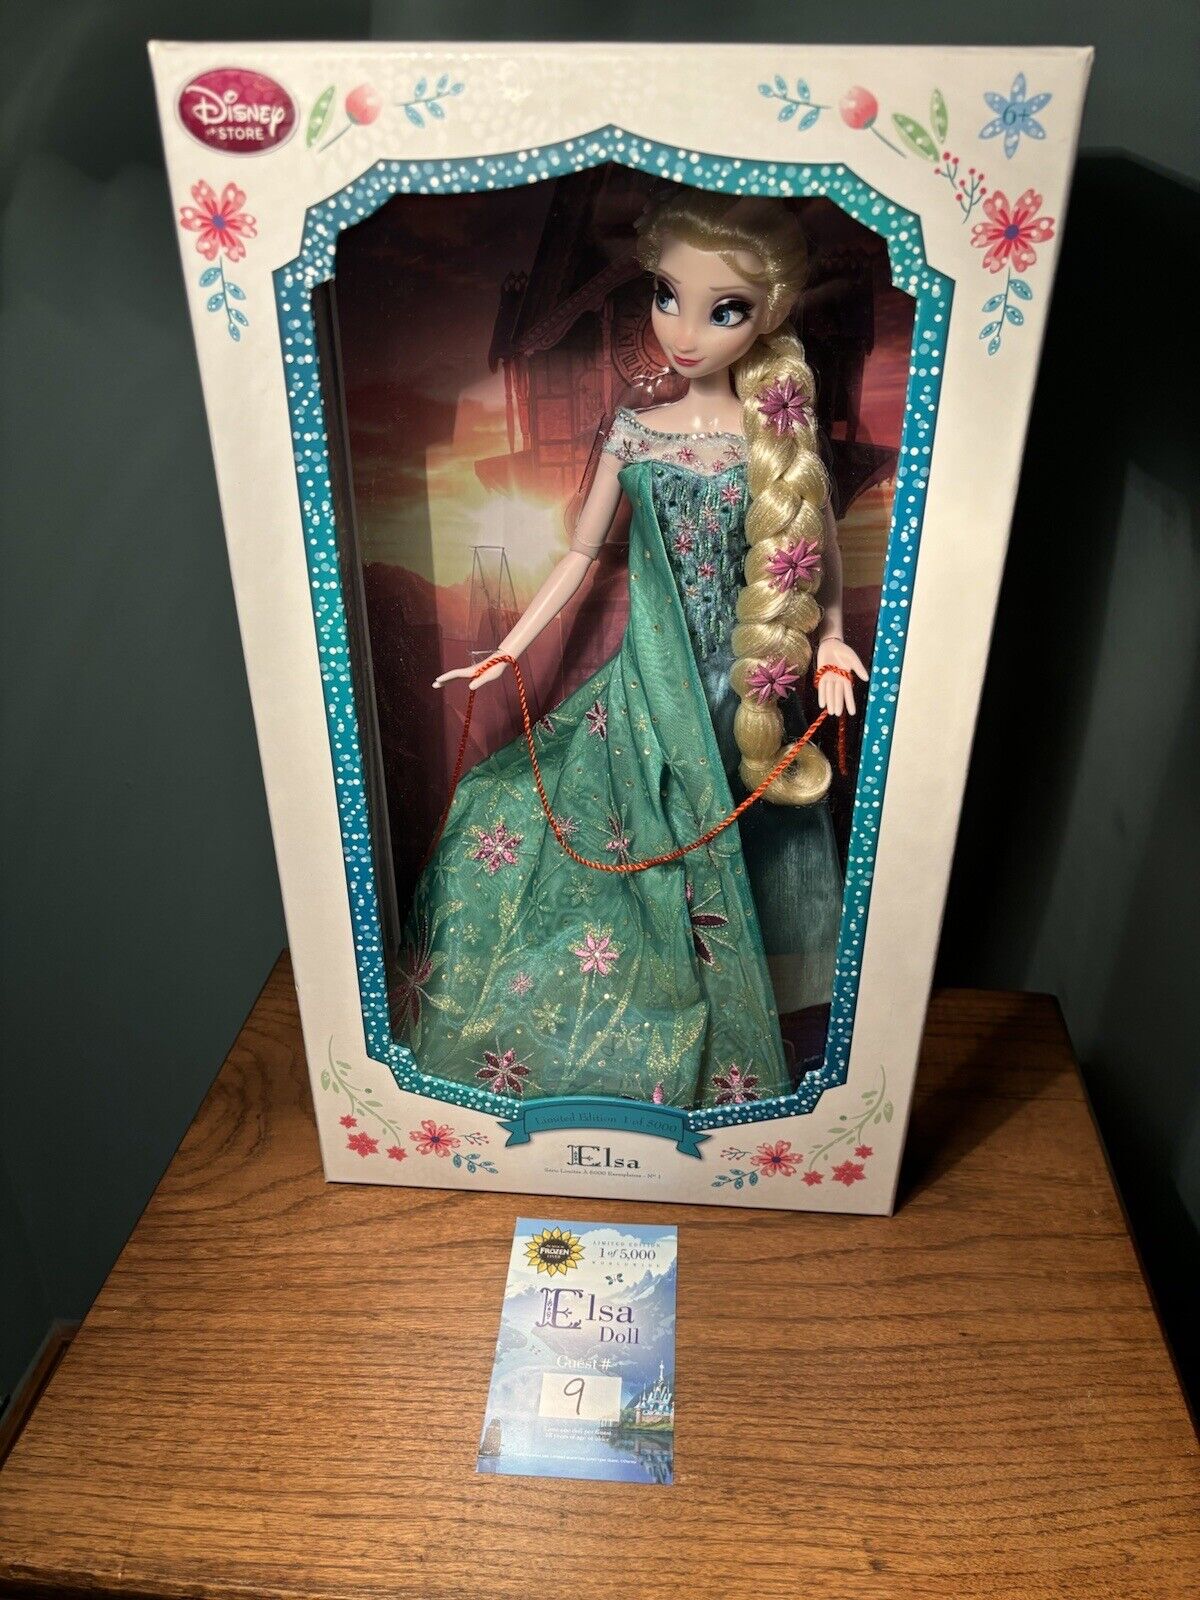 Disney Store Elsa From Frozen Fever Ltd Ed 5000